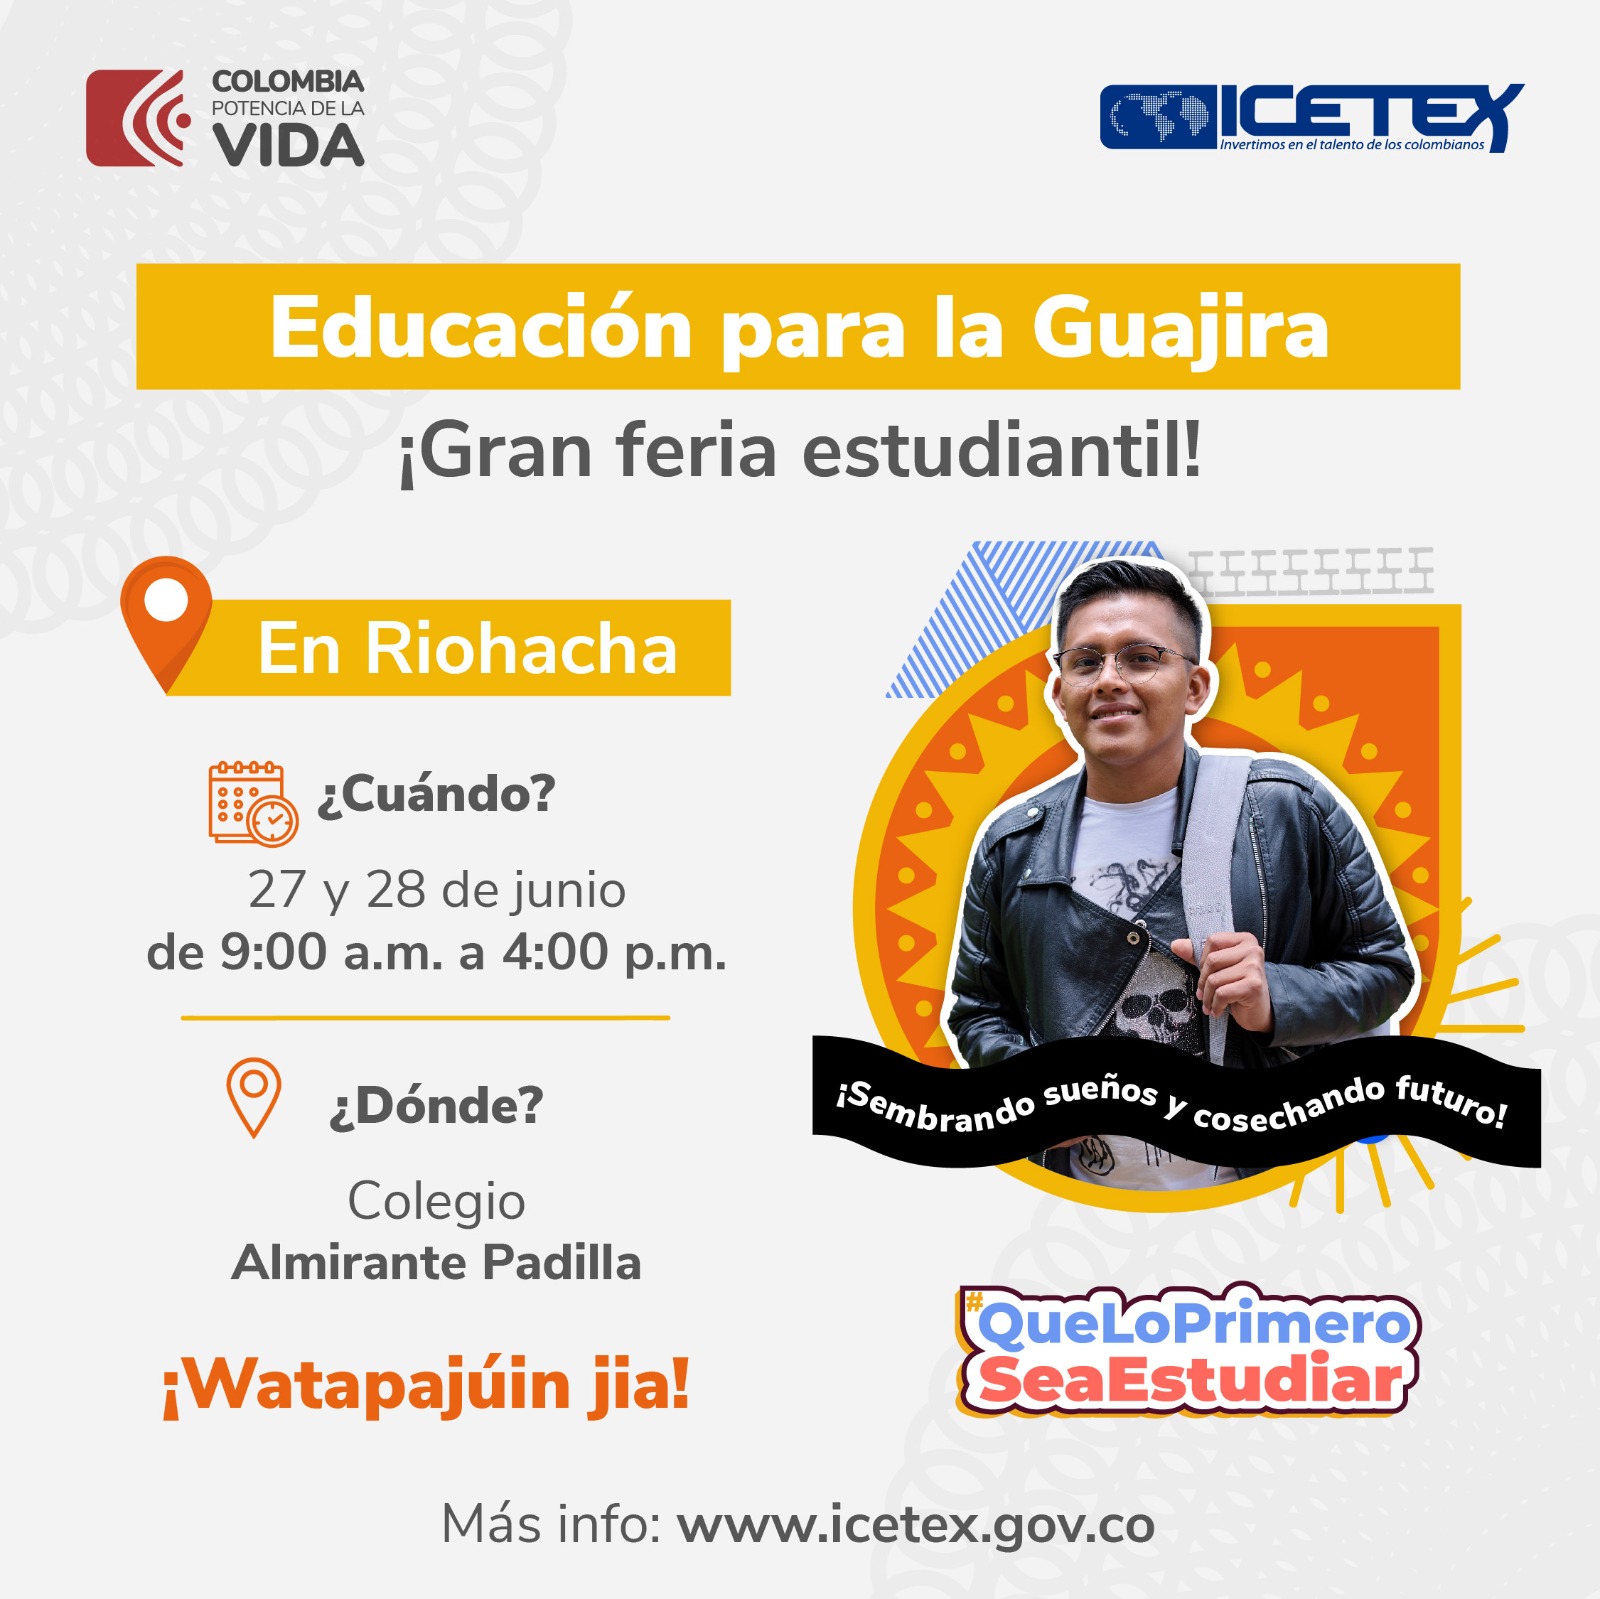 Oferta de educación del ICETEX en la guajira